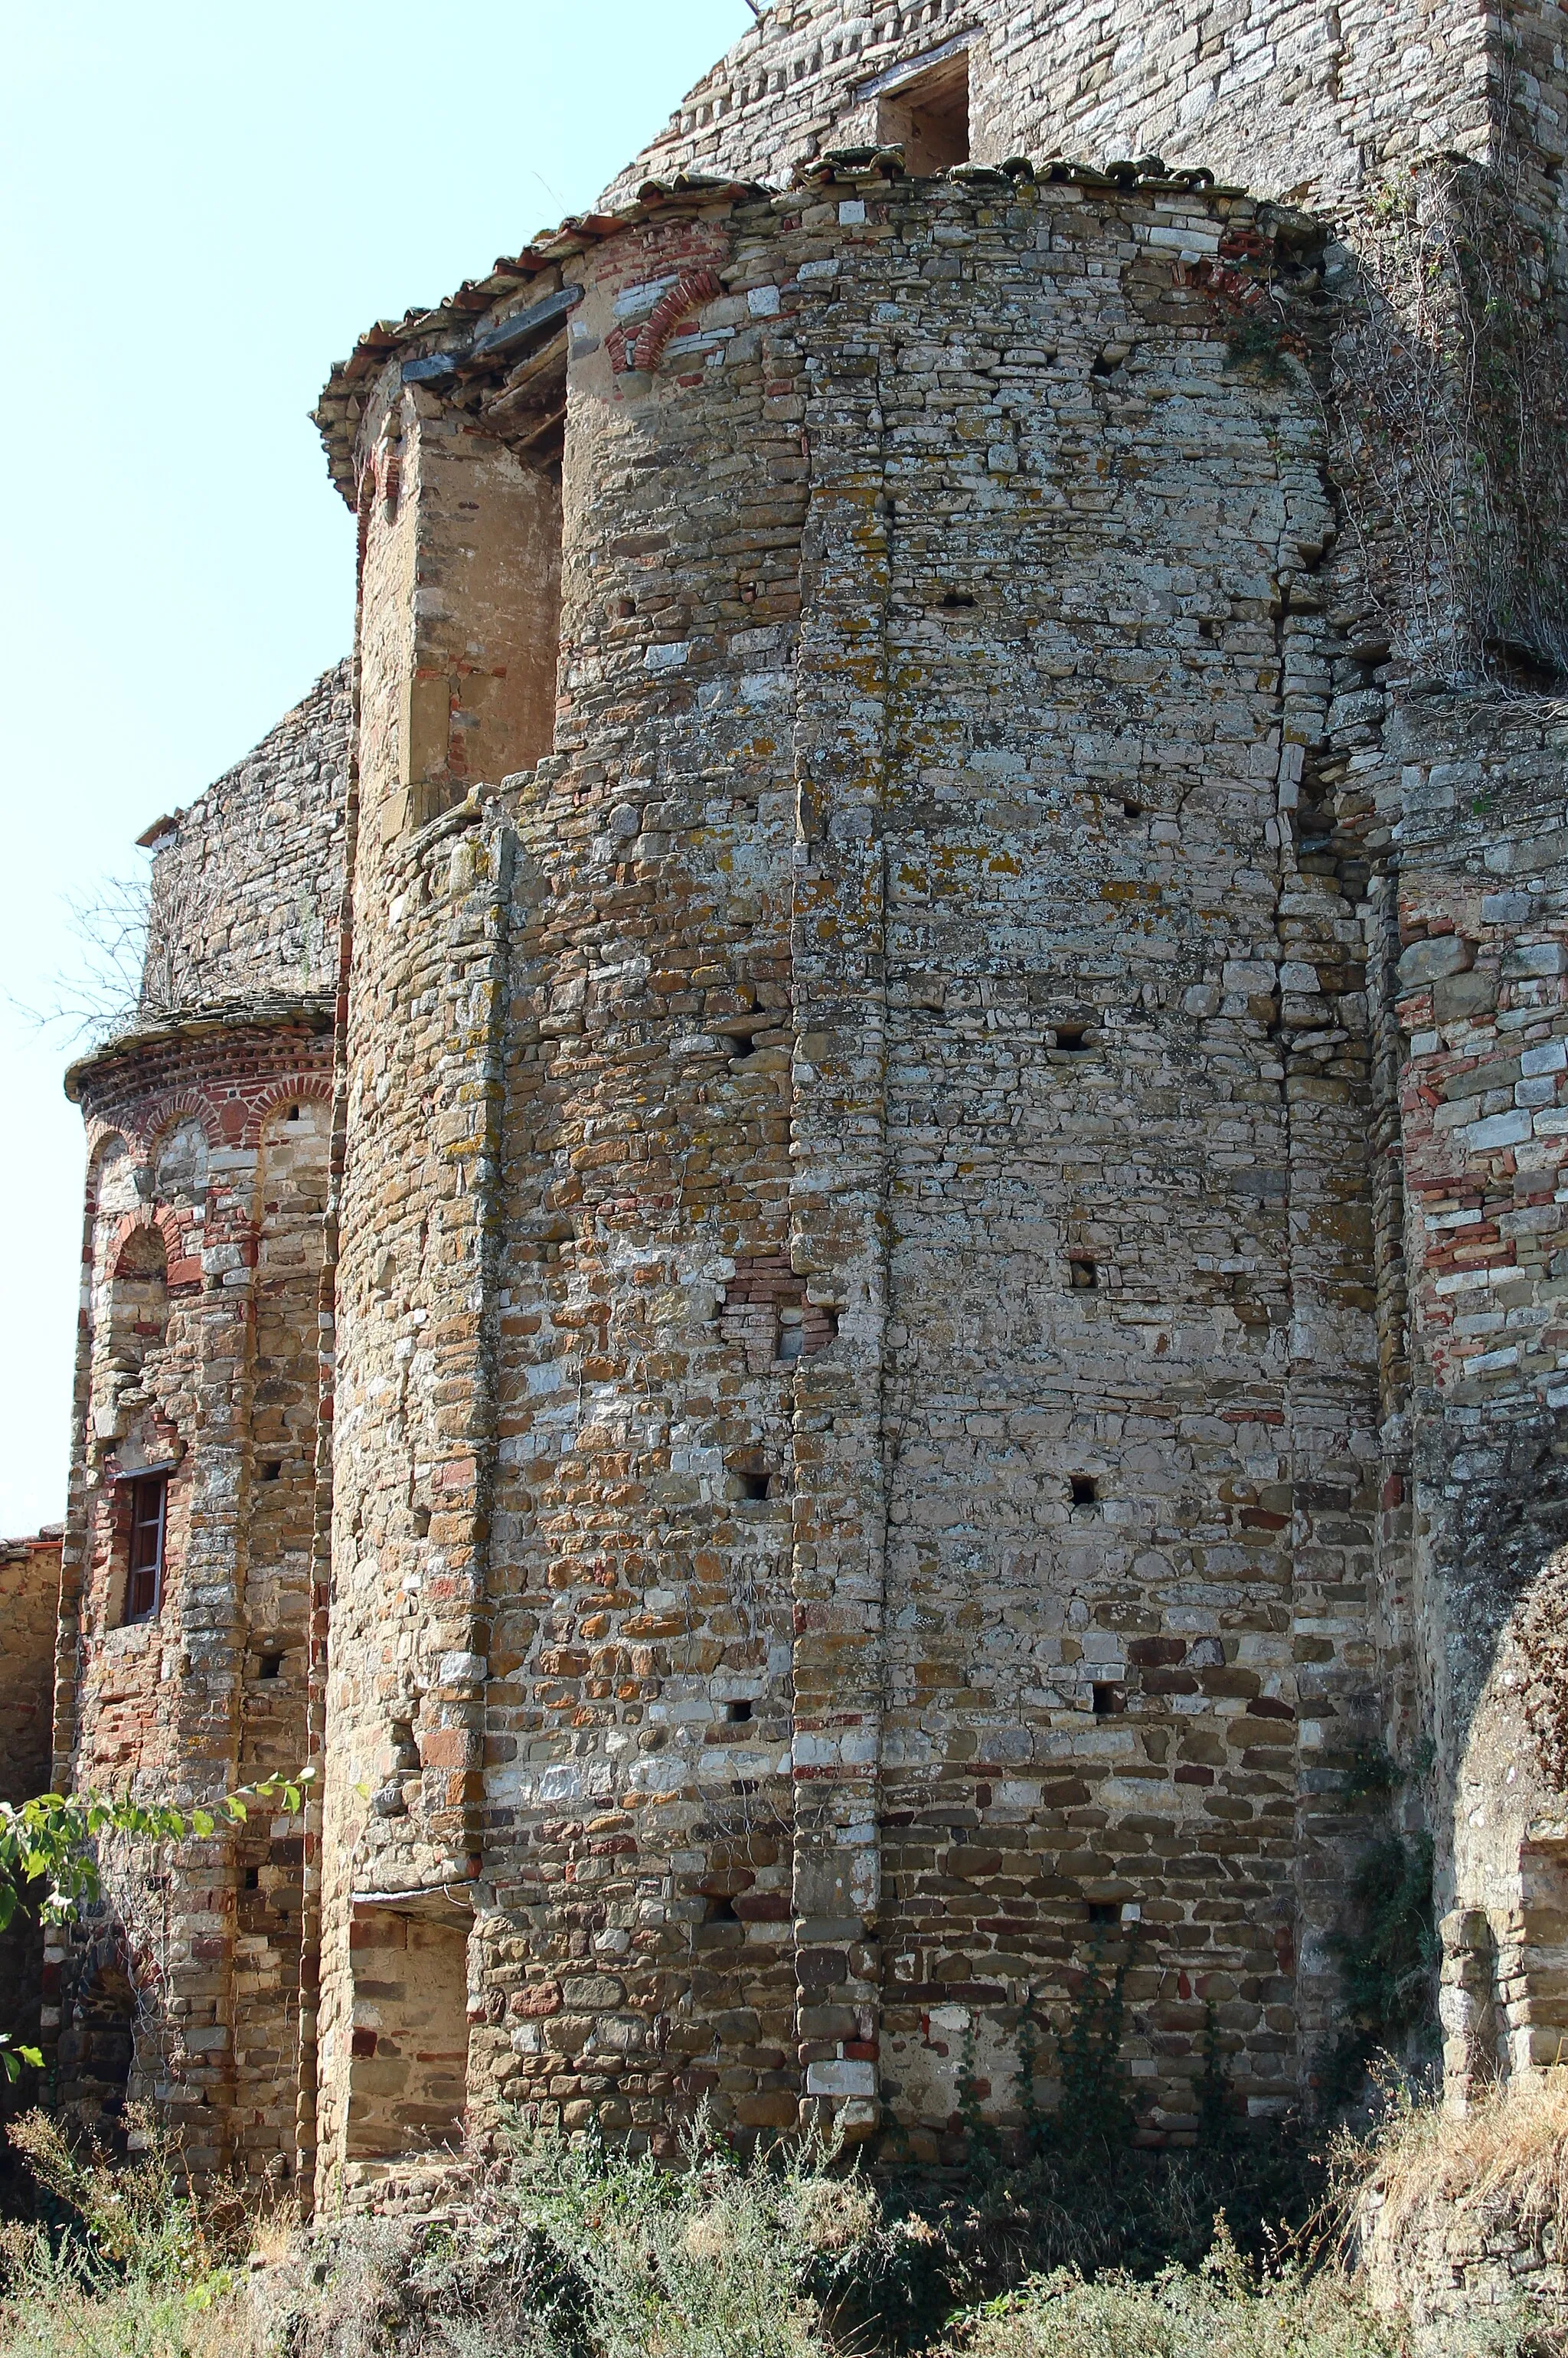 Photo showing: Church Santa Maria di Confine, Pieve di Confine, hamlet of Tuoro sul Trasimeno, Umbria, Italy